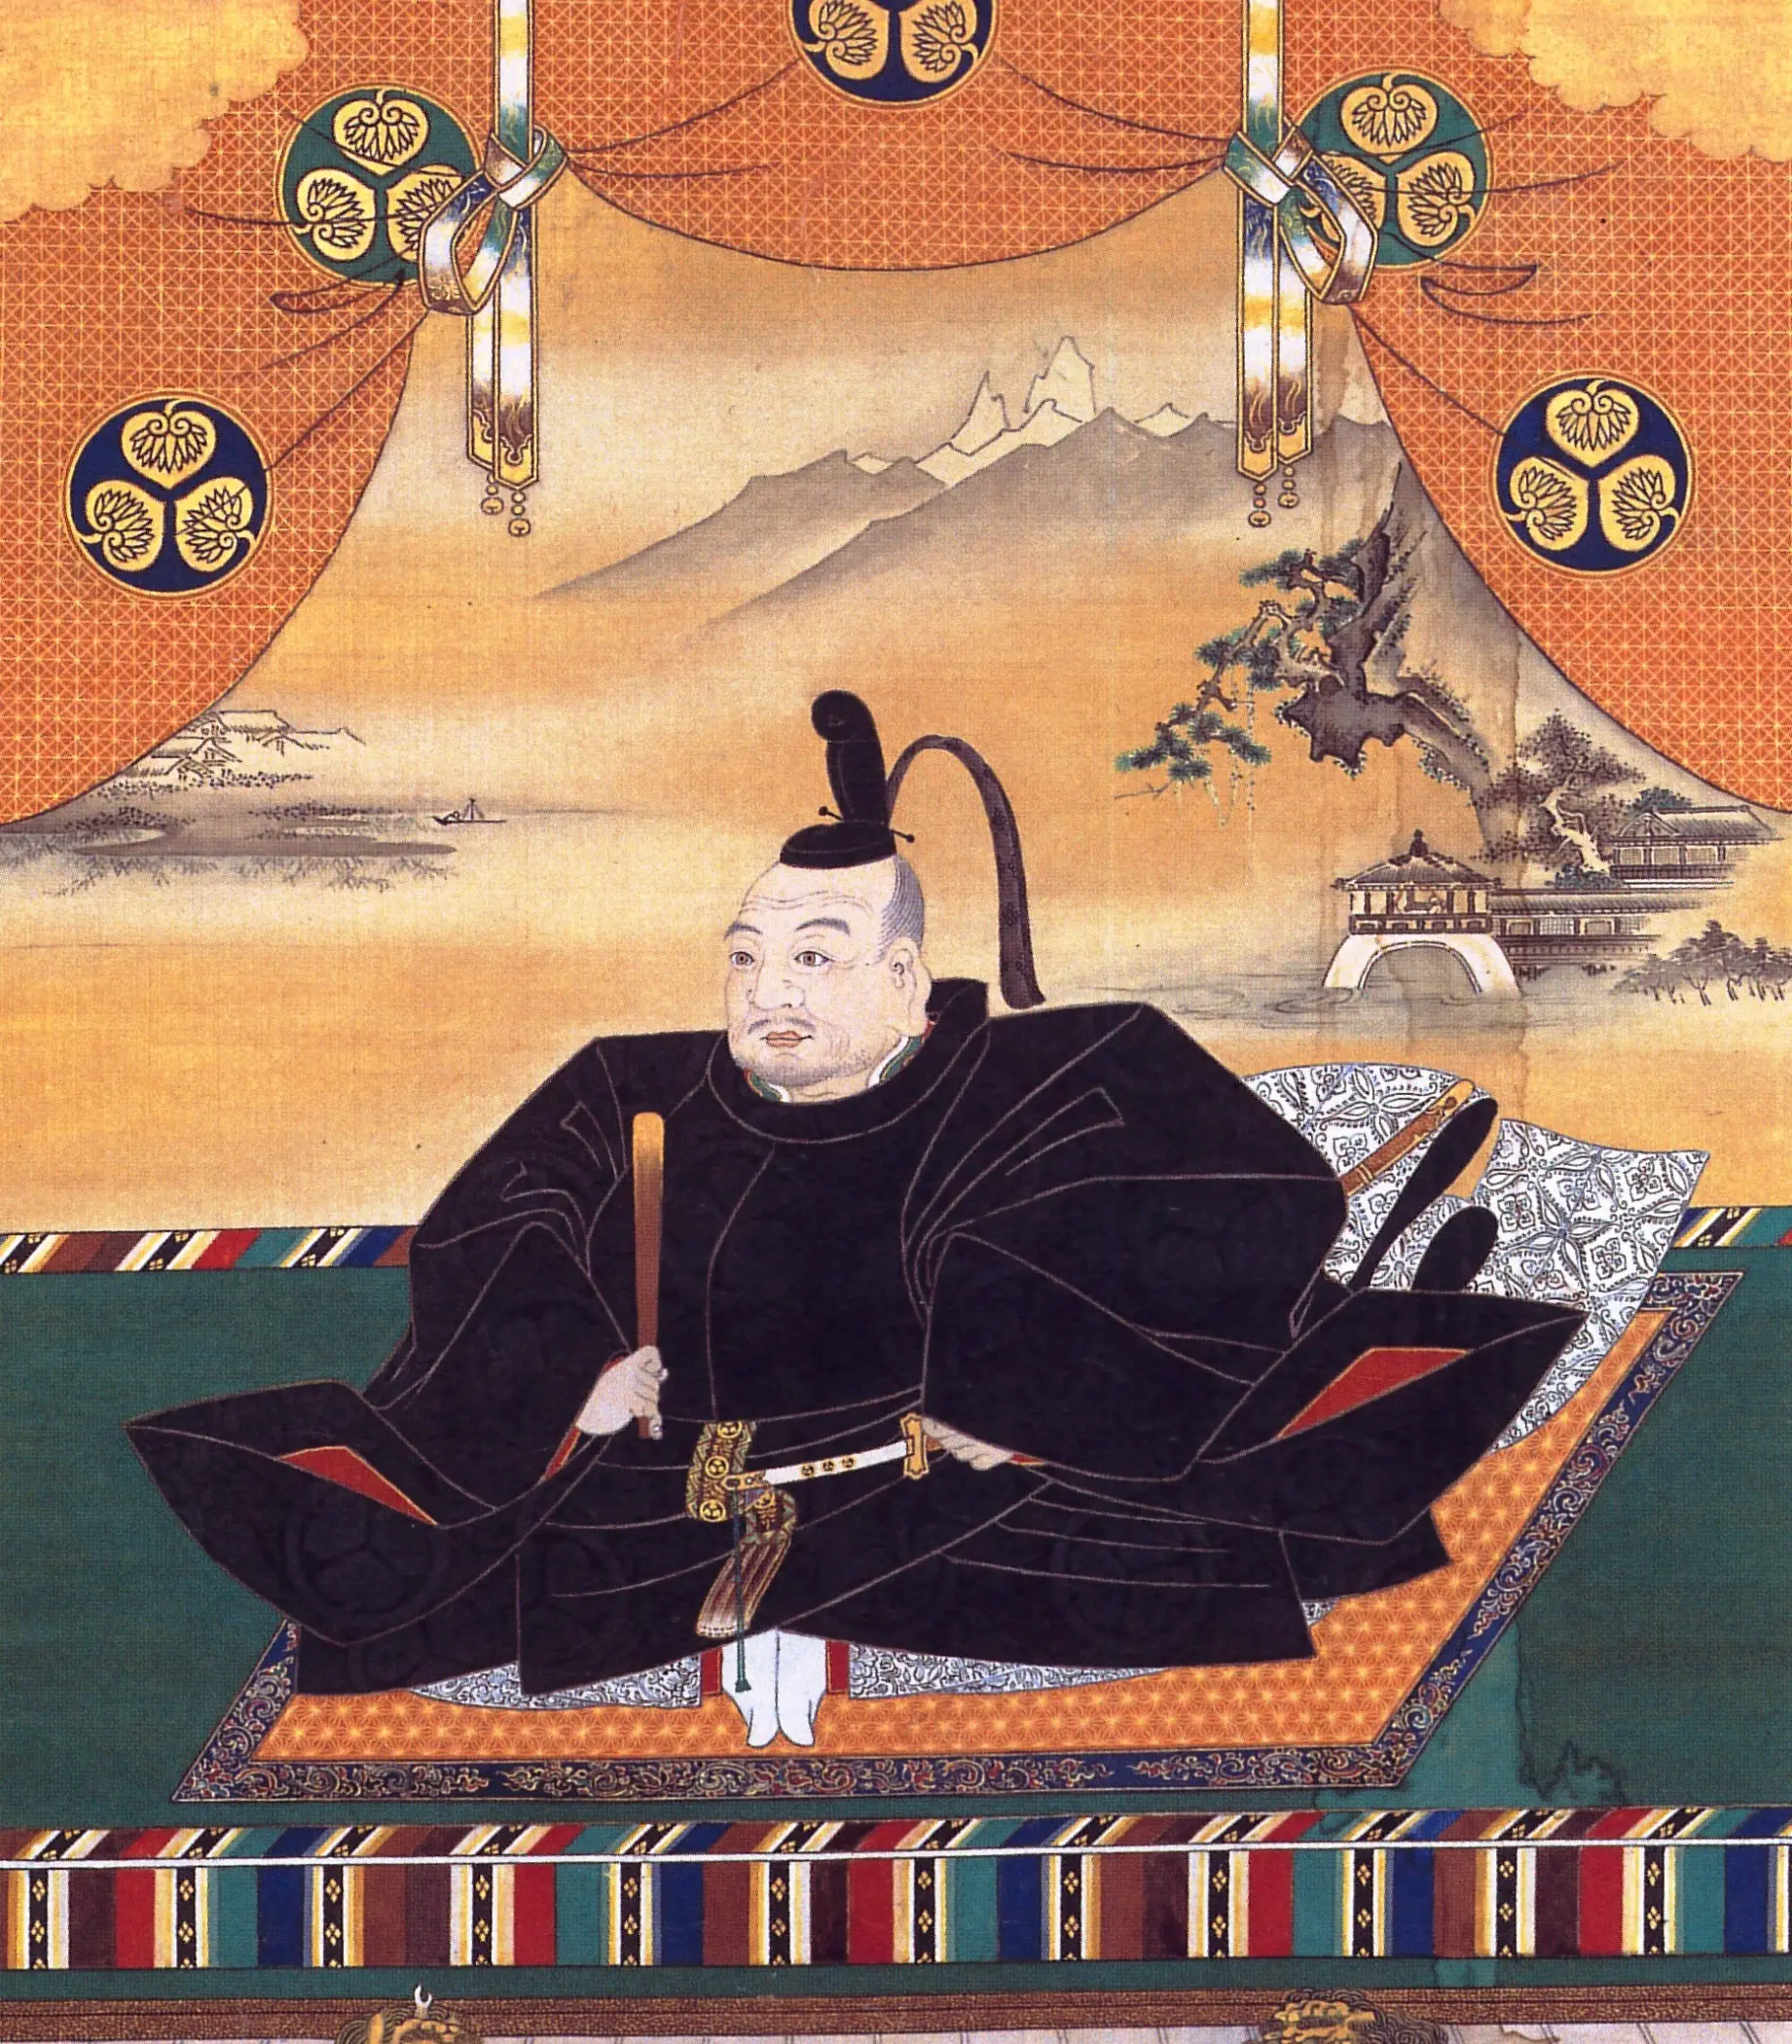 William Adams: La historia del primer samurái occidental, el hombre que inspiró el libro de 'Shogun'